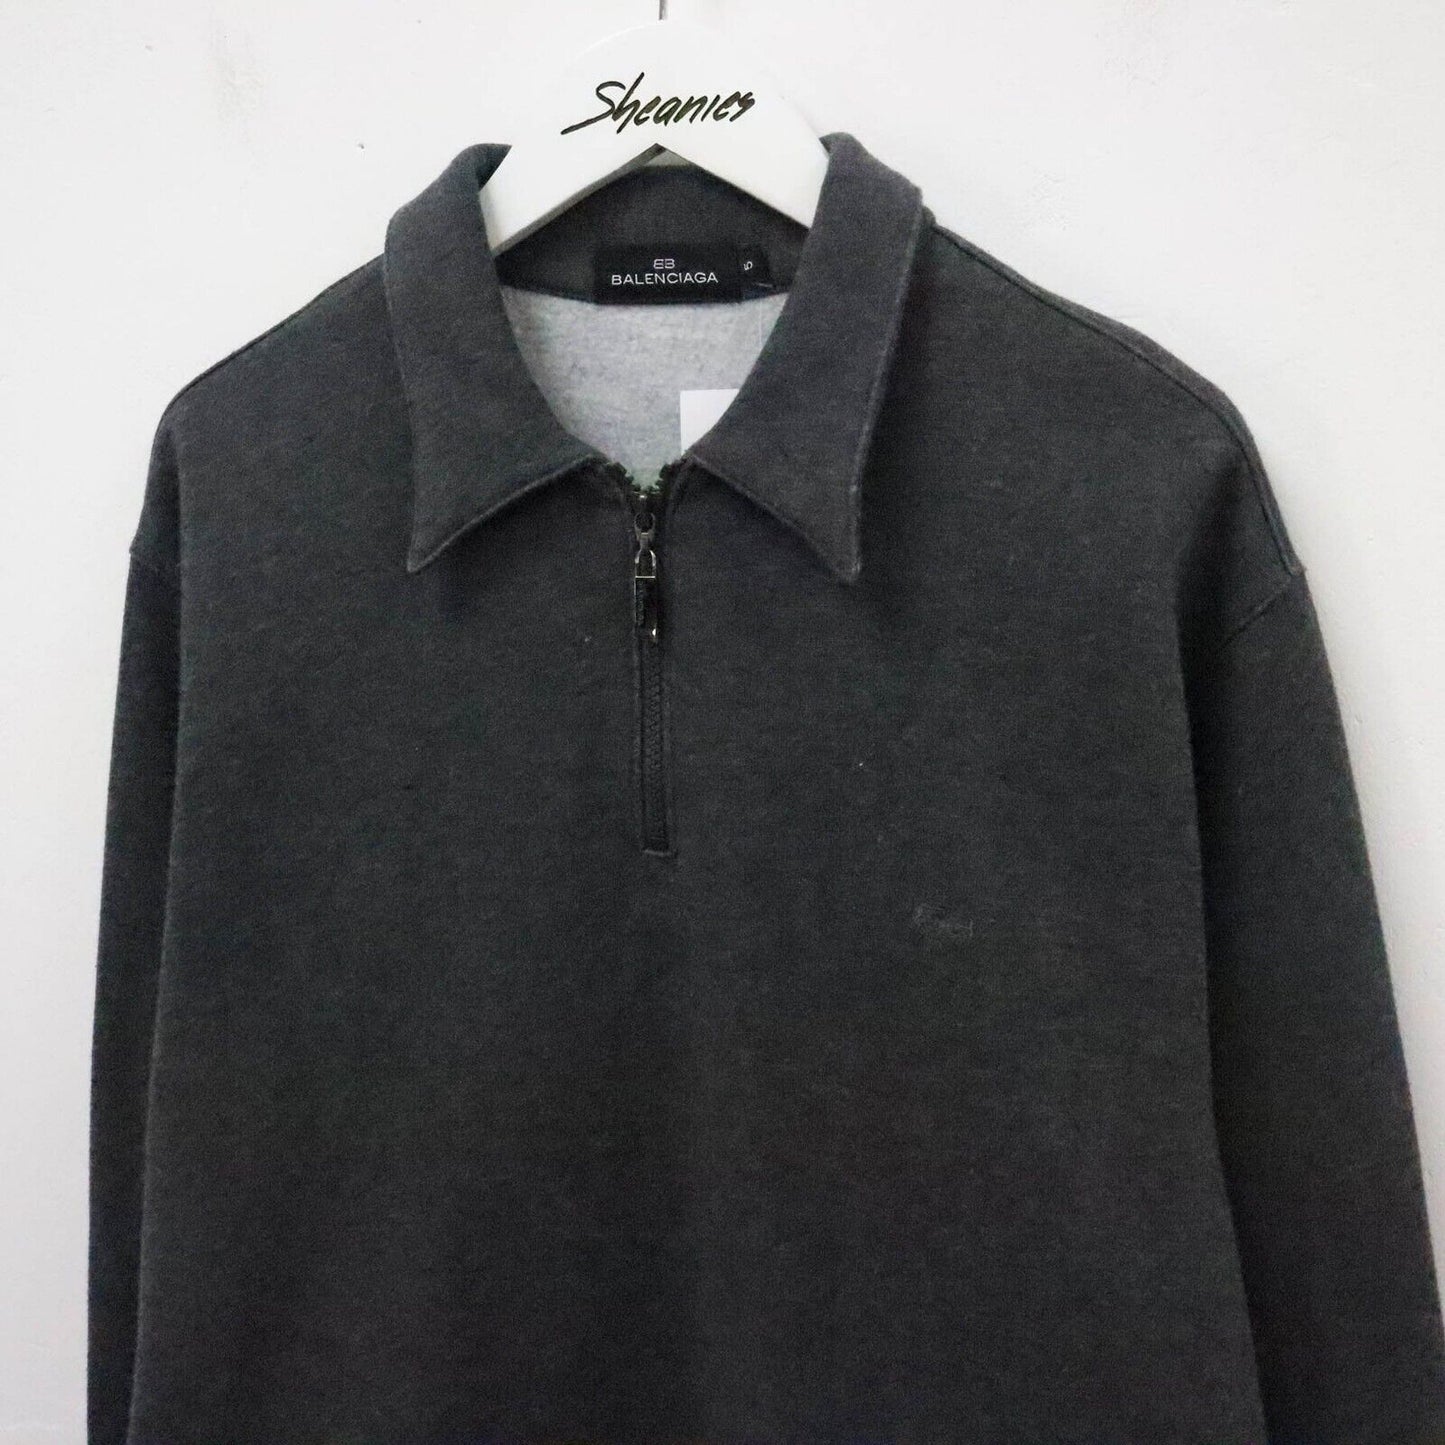 Balenciaga 1/4 Zip Sweatshirt Size XL